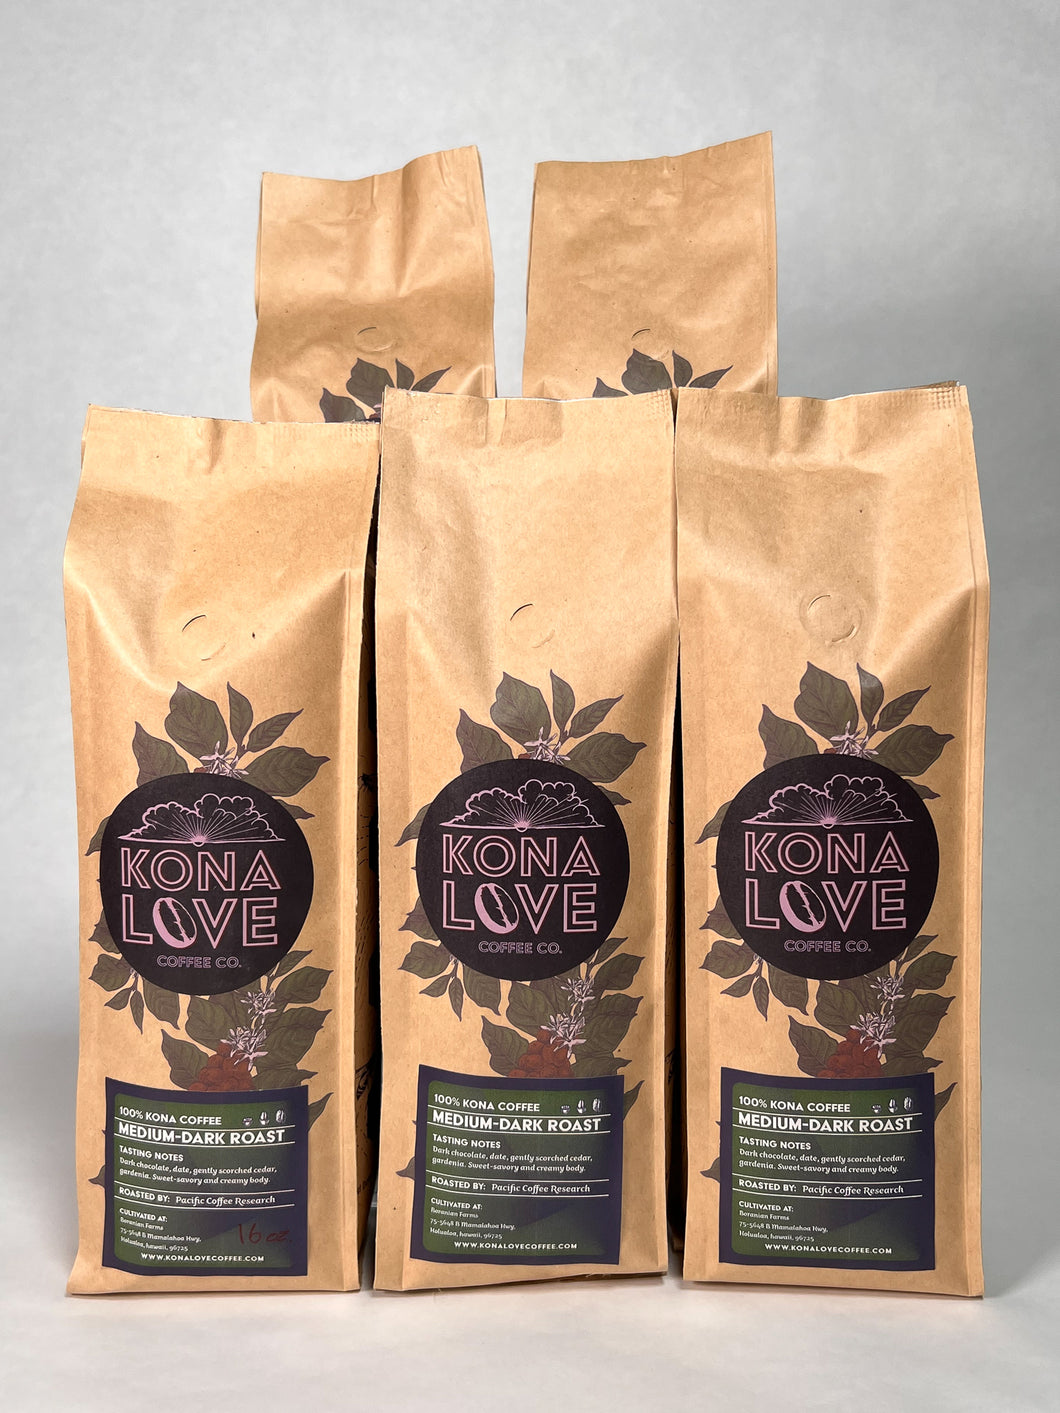 Medium-Dark Roast 100% Kona Coffee